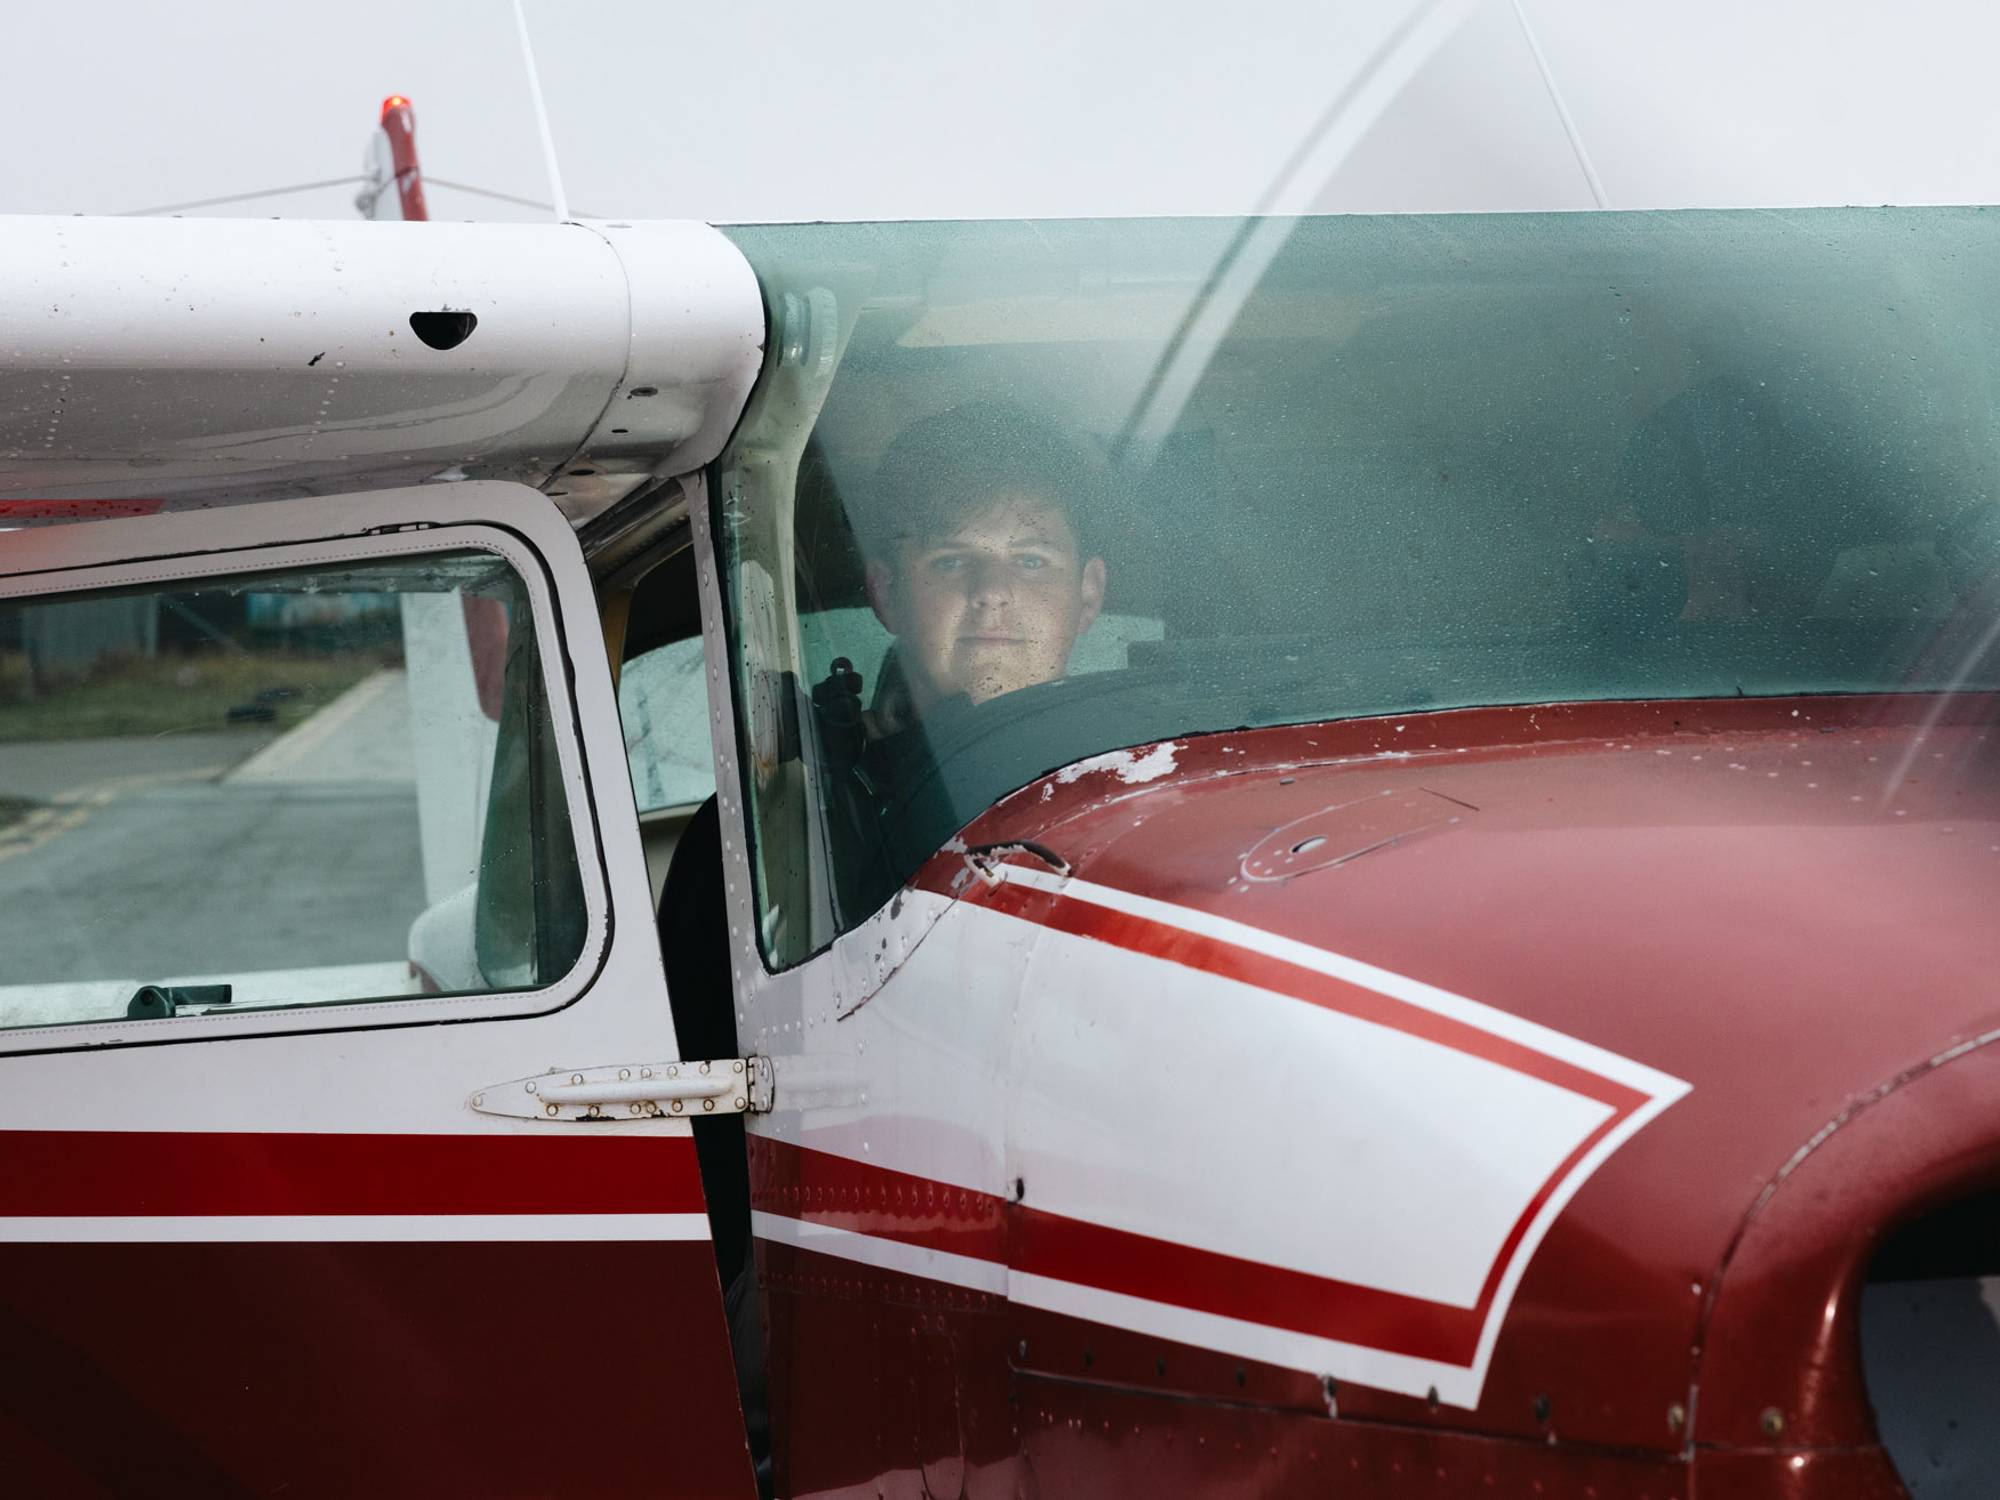 Kristoffer sitter inne i flyet, i førersetet. Han ser gjennom frontruten og inn i kamera. Han smiler. På fronten til flyet kan vi se propellen som går, han skal snart ut og fly.